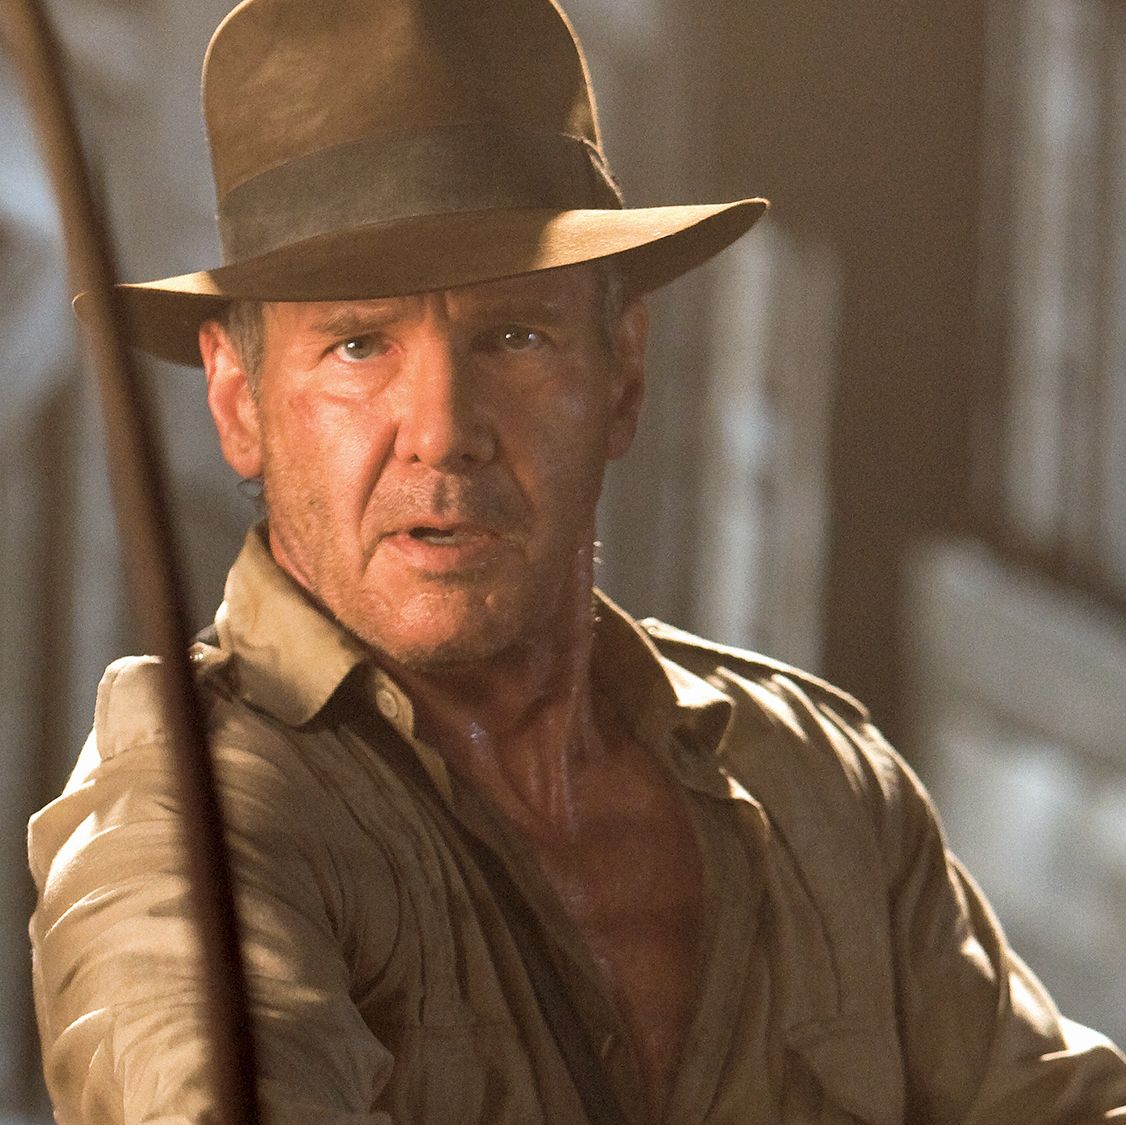 La Nación / Subastan sombrero de Indiana Jones y un androide de Star Wars